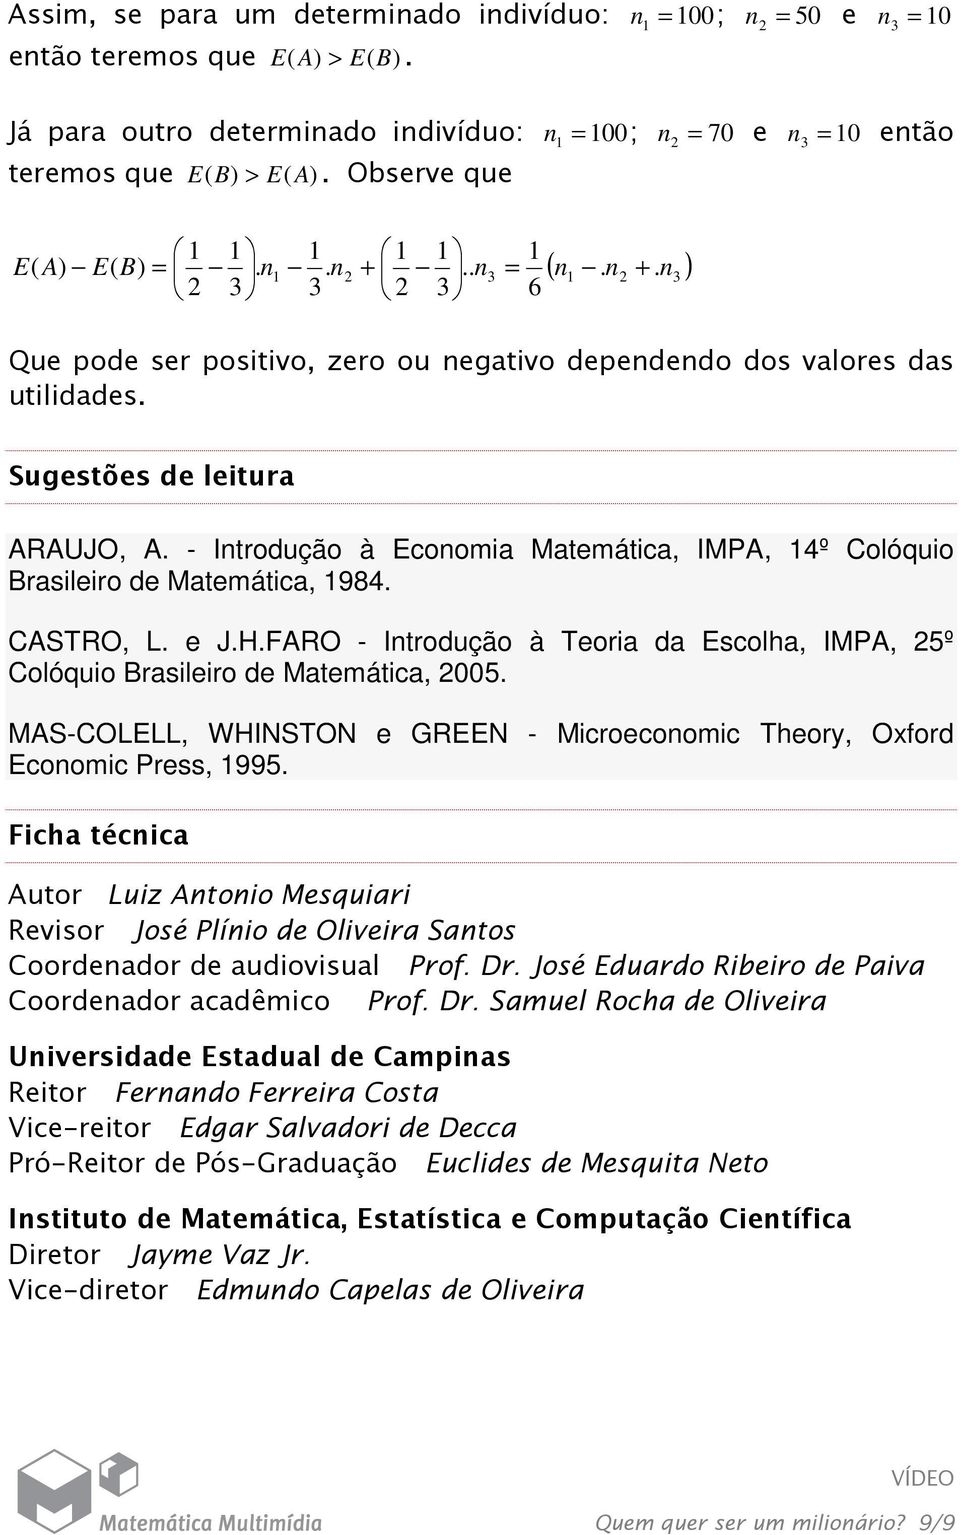 - Introdução à Economia Matemática, IMPA, 4º Colóquio Brasileiro de Matemática, 984. CASTRO, L. e J.H.FARO - Introdução à Teoria da Escolha, IMPA, 25º Colóquio Brasileiro de Matemática, 2005.